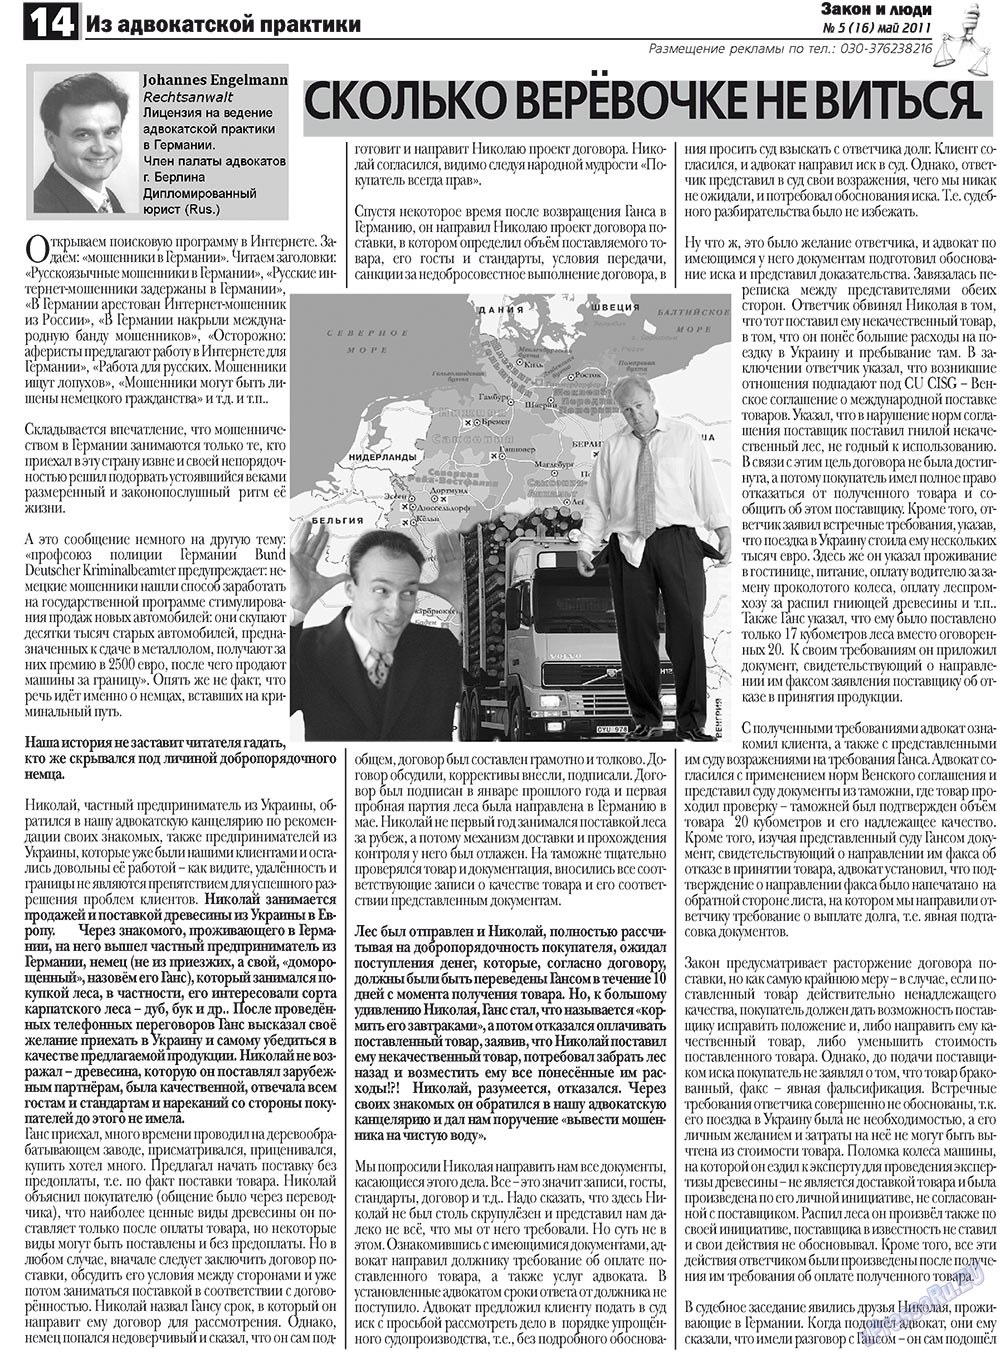 Закон и люди, газета. 2011 №5 стр.14